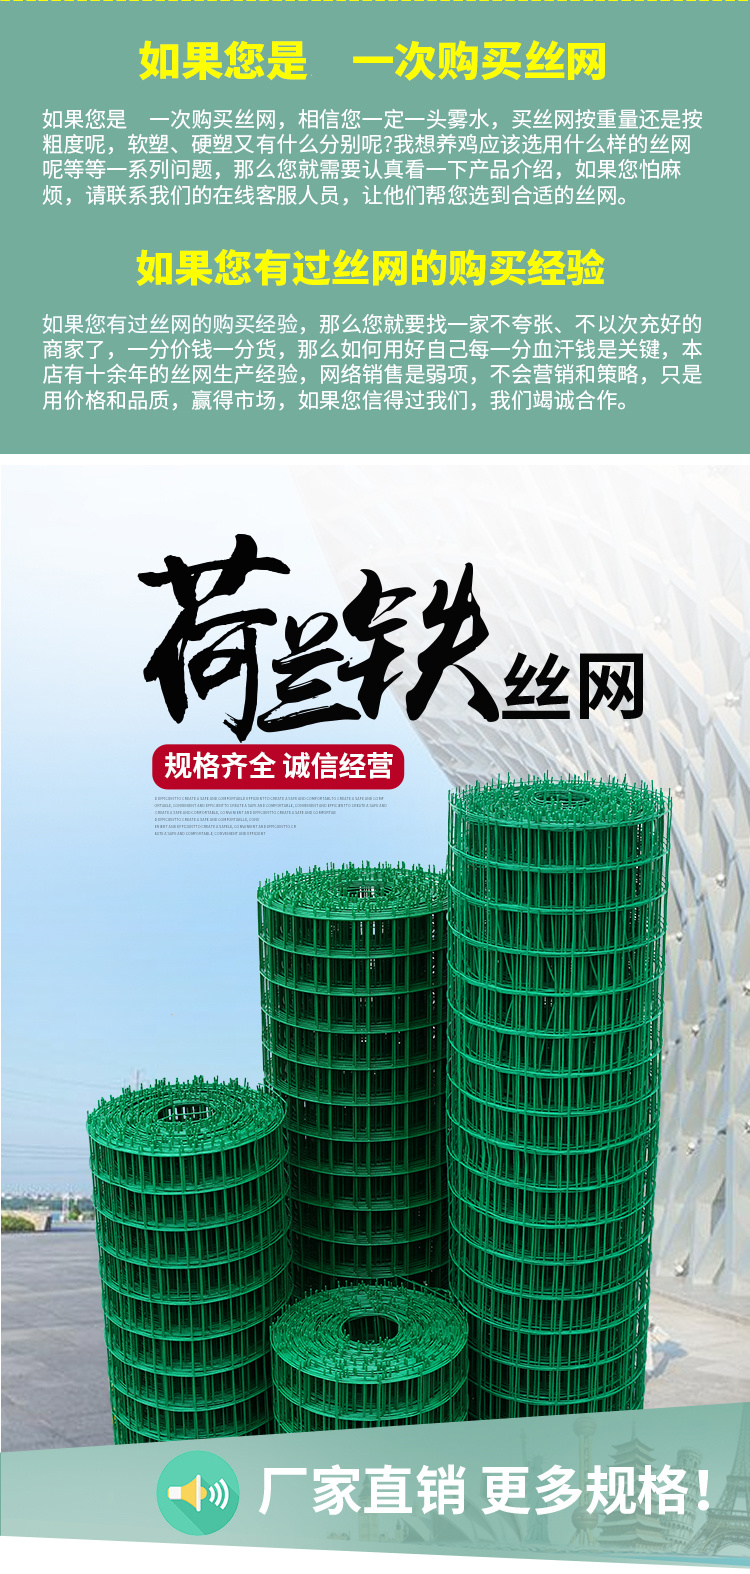 北京浸塑荷兰网 绿色铁丝网围栏 养鸡网防护网厂家示例图1